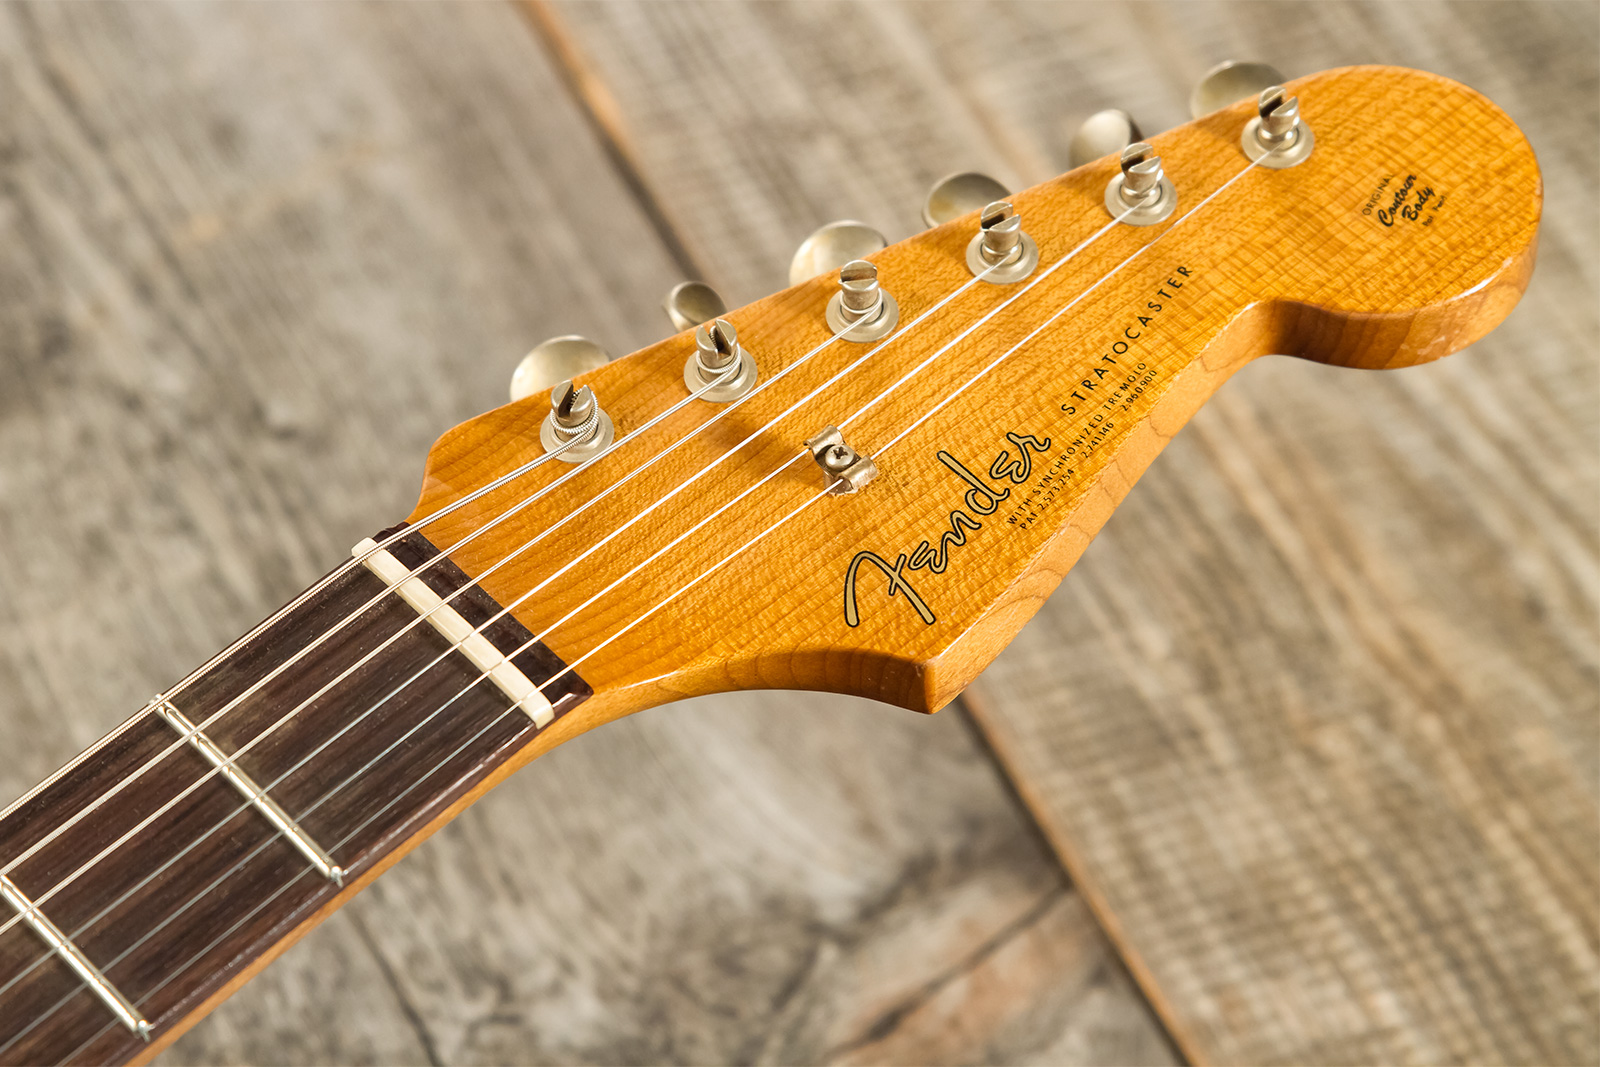 Fender Custom Shop Strat 1963 3s Trem Rw #cz579406 - Relic Aged Candy Apple Red - Elektrische gitaar in Str-vorm - Variation 7